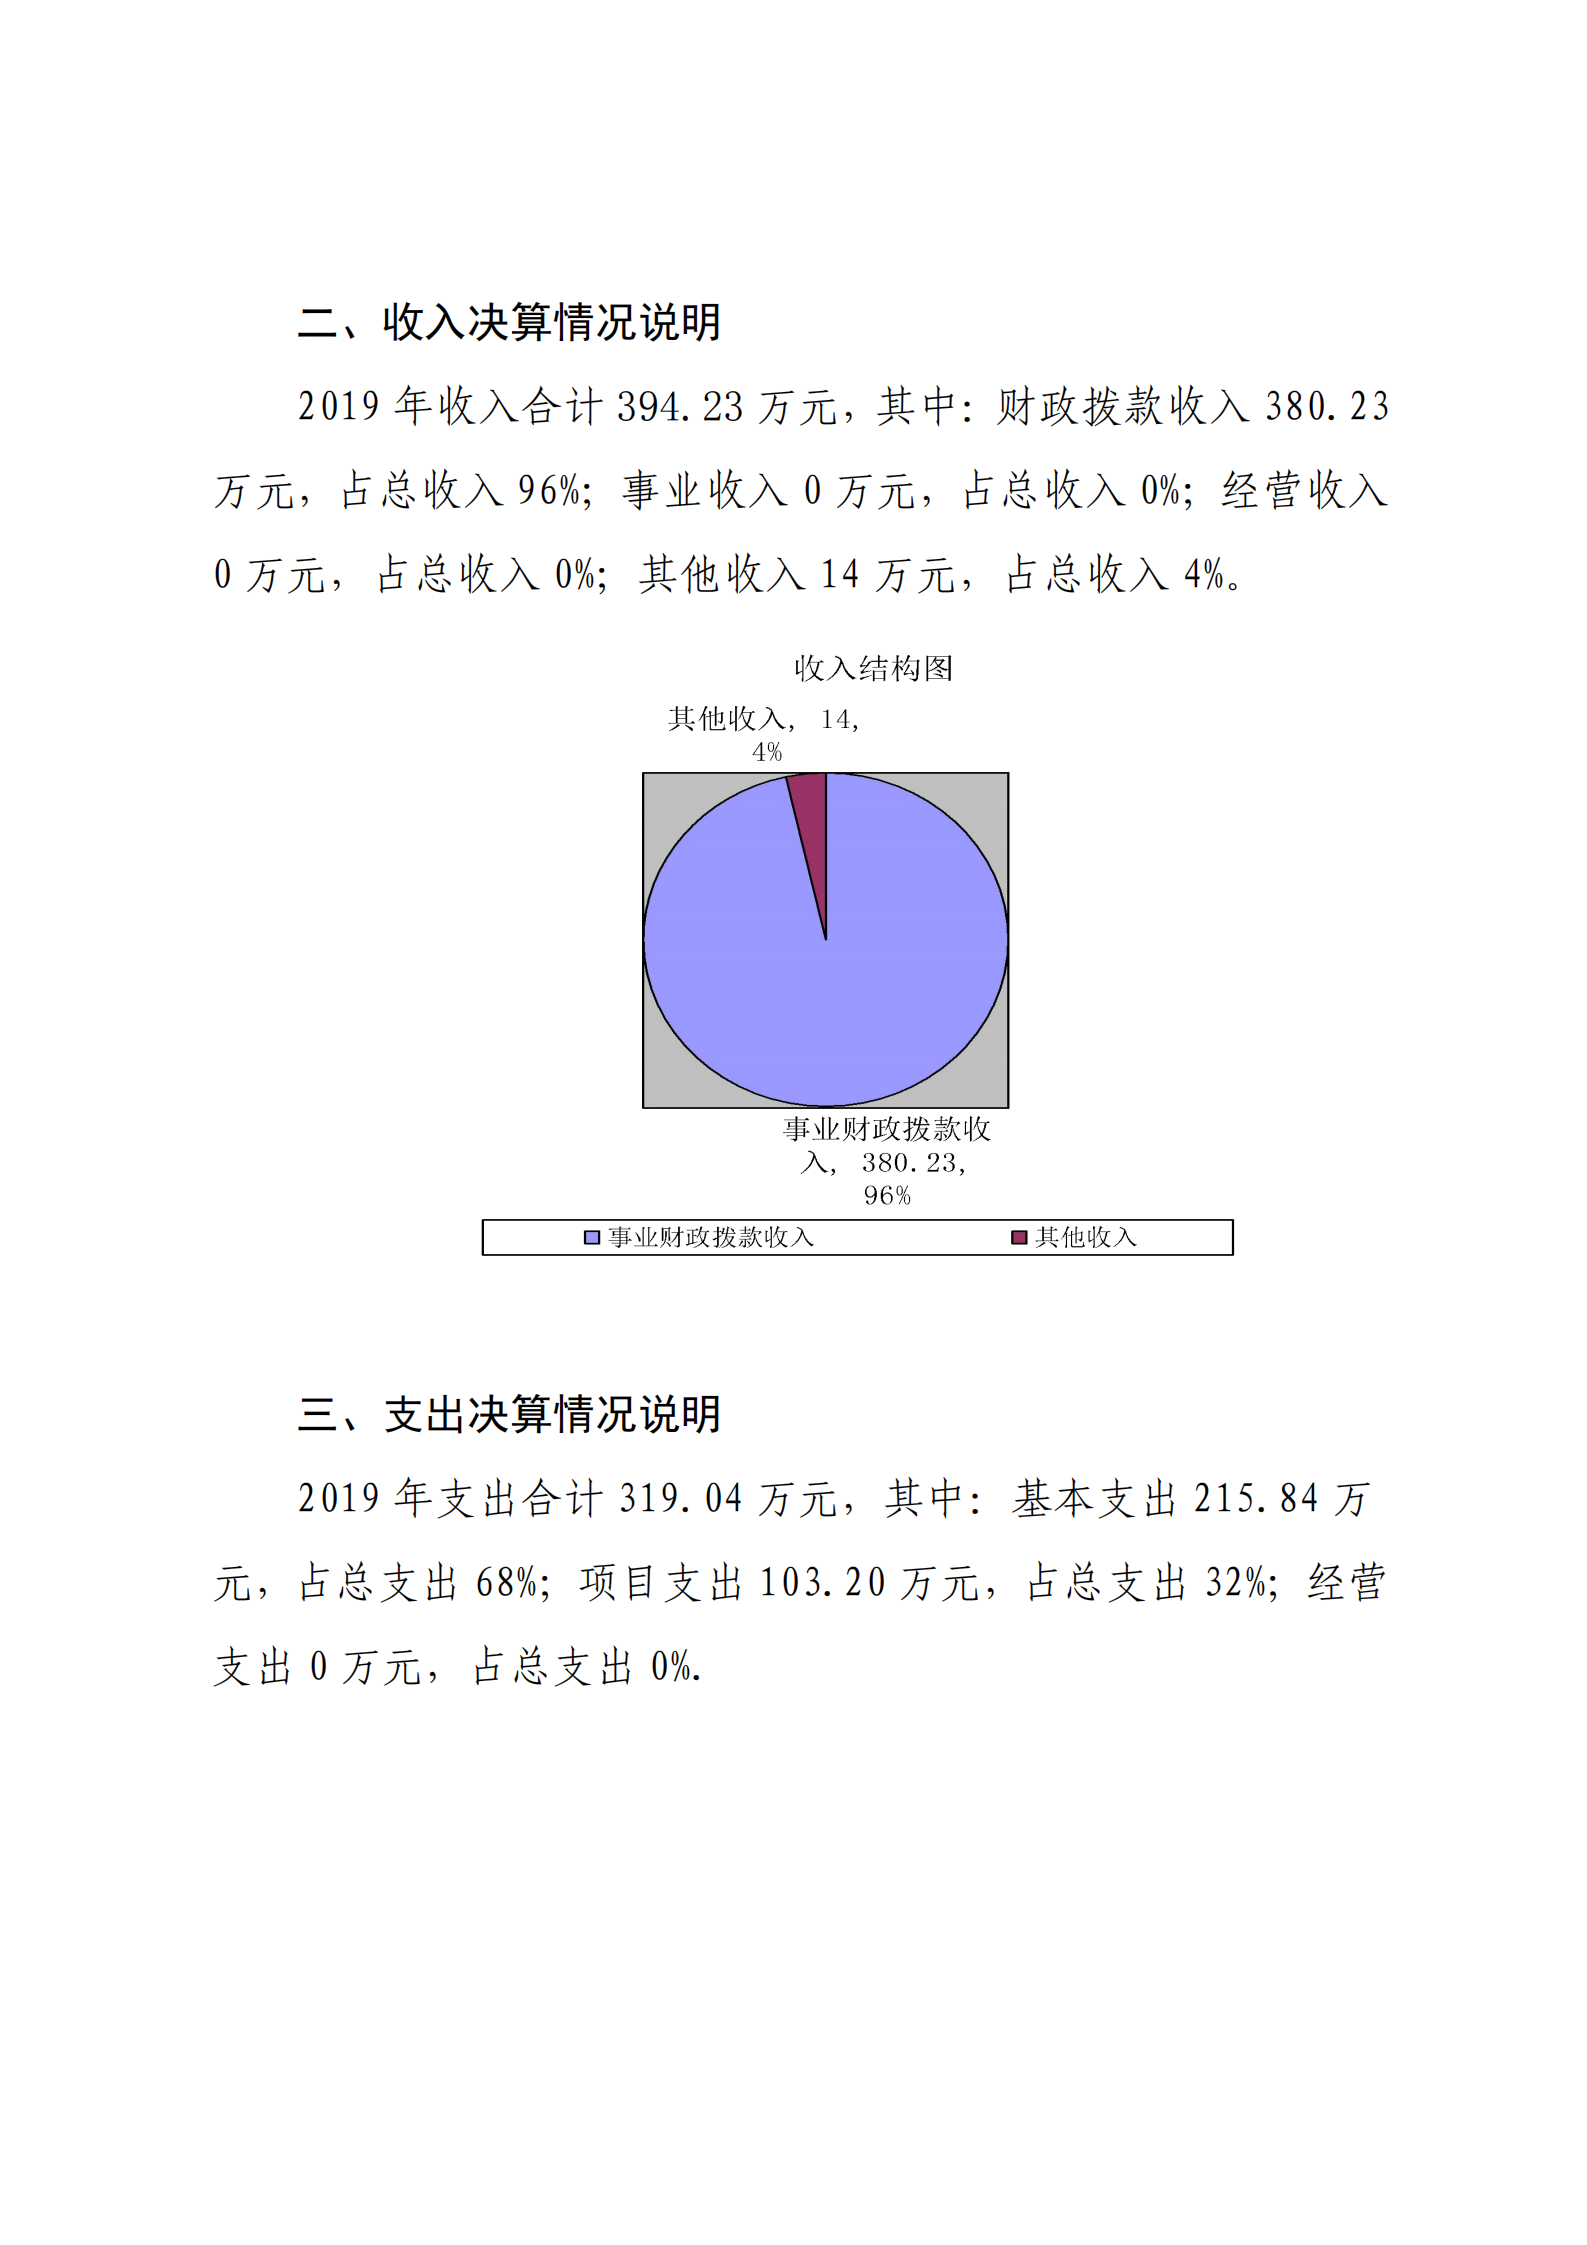 中共延安市委党史研究室2019年部门决算(图18)